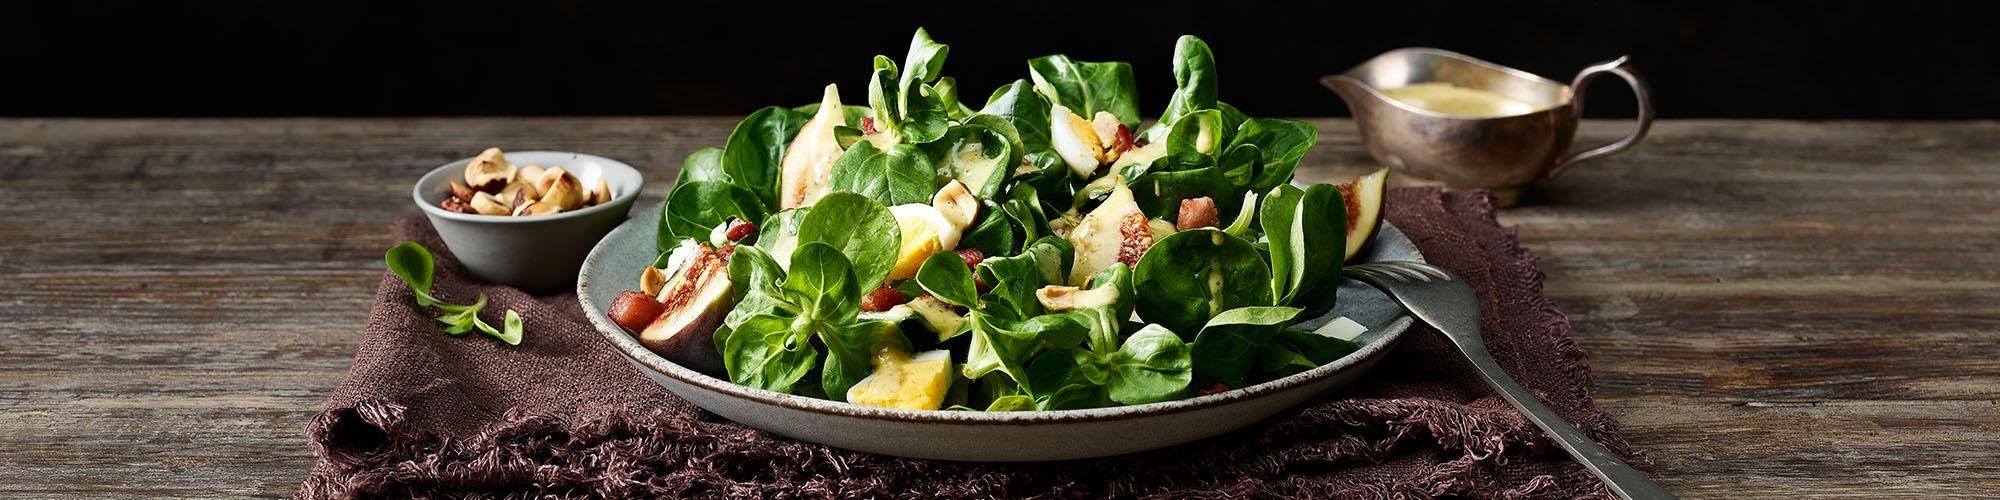 Salade de doucette aux figues et aux noisettes grillées